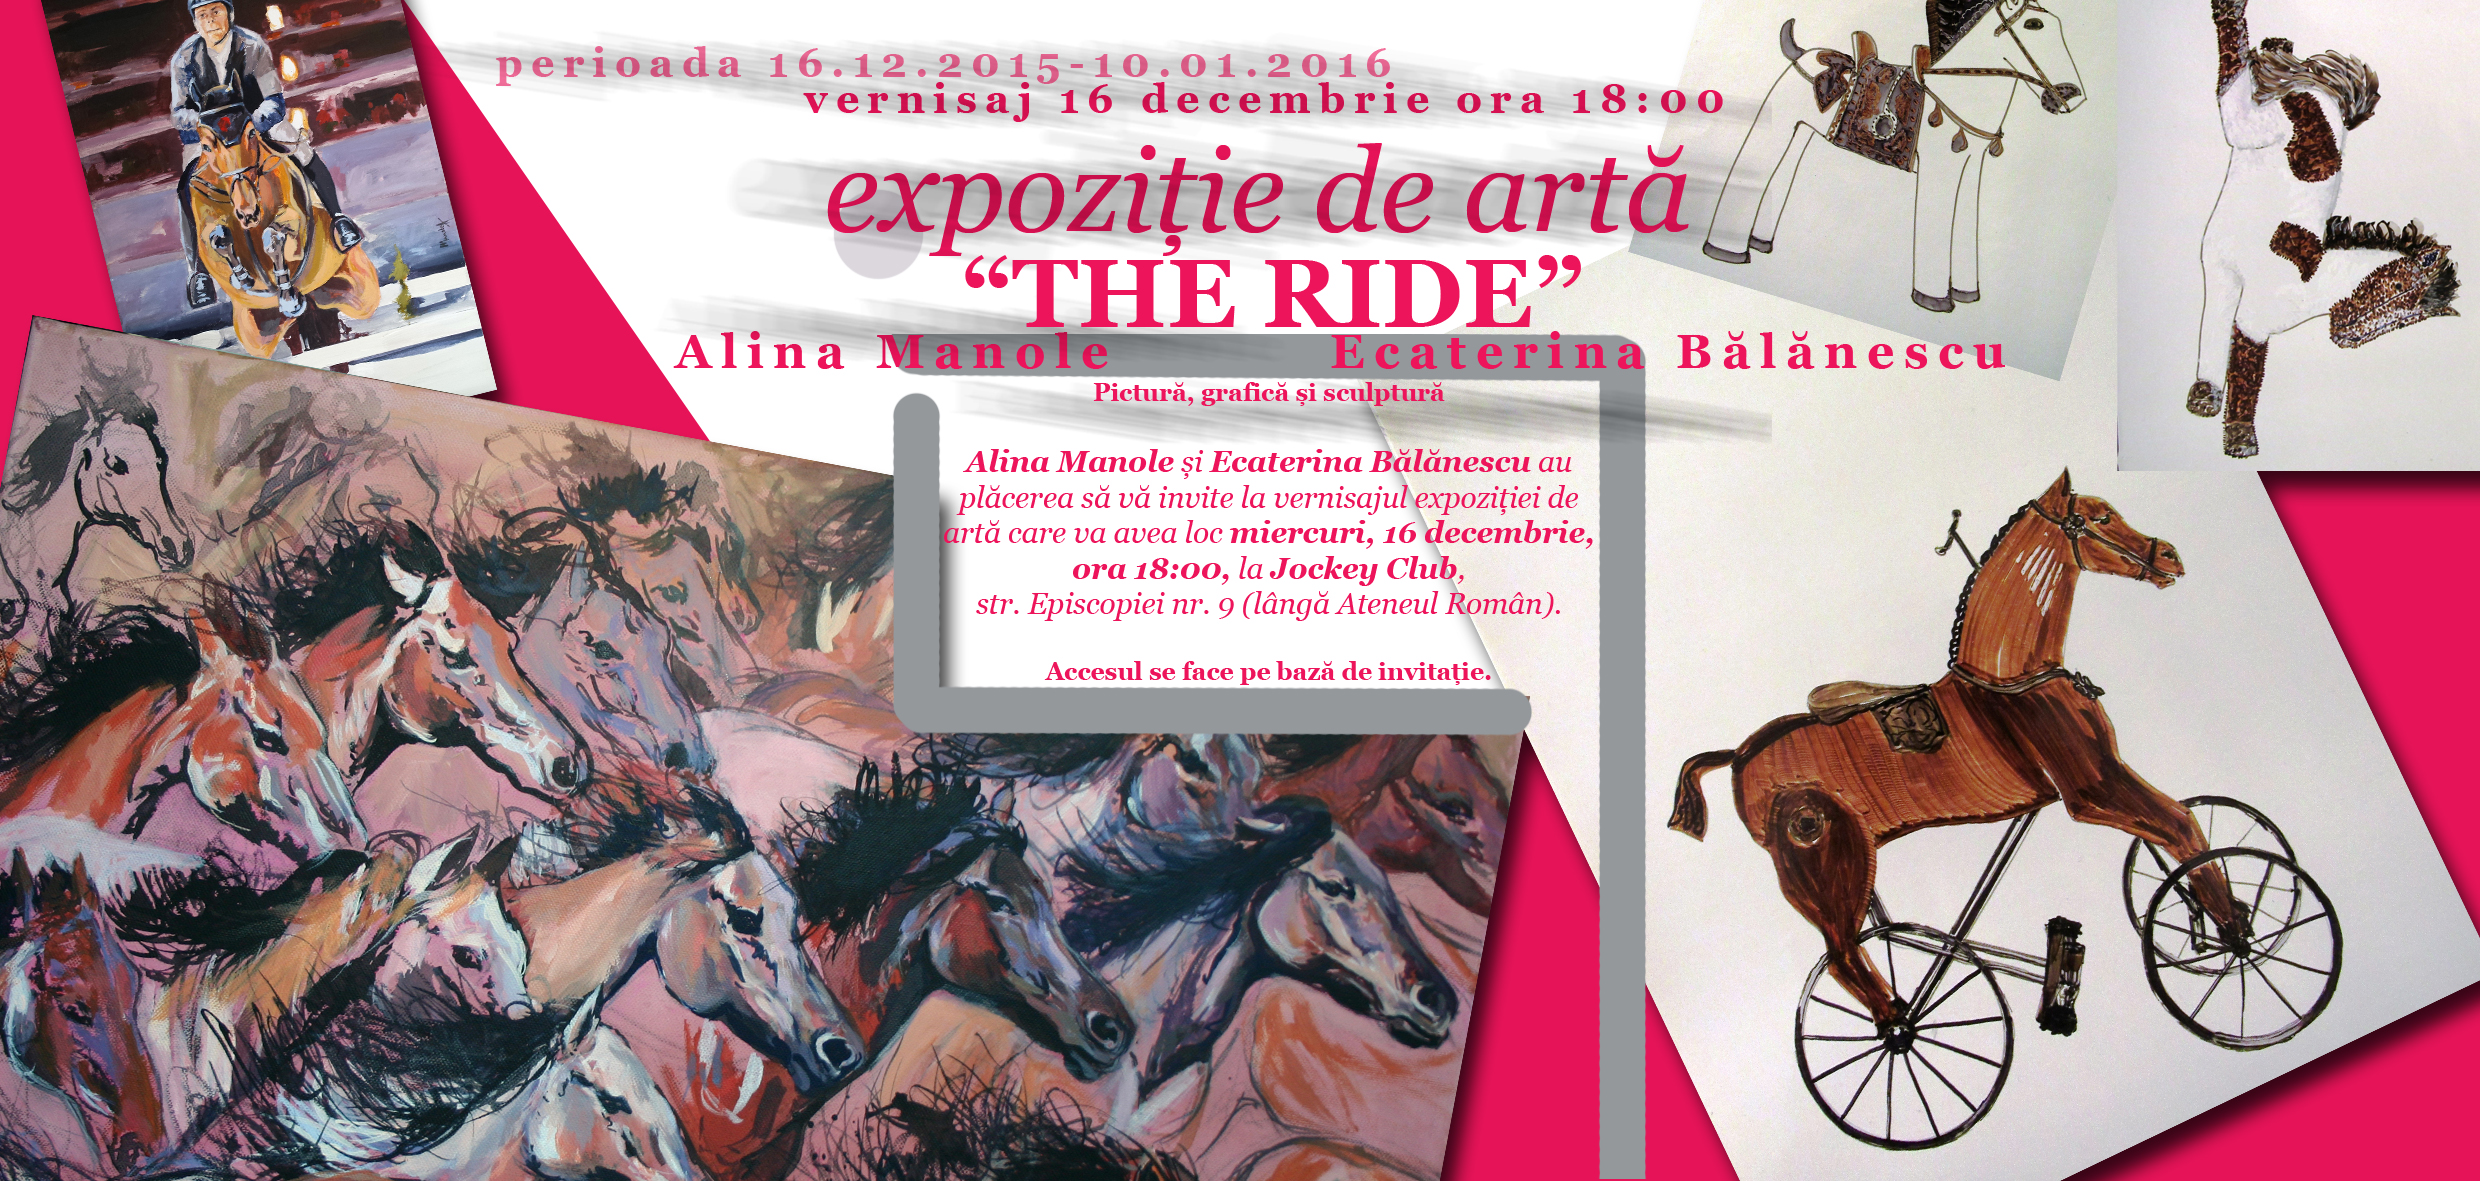 You are currently viewing The Ride: expoziție de artă Alina Manole  și Ecaterina Bălănescu